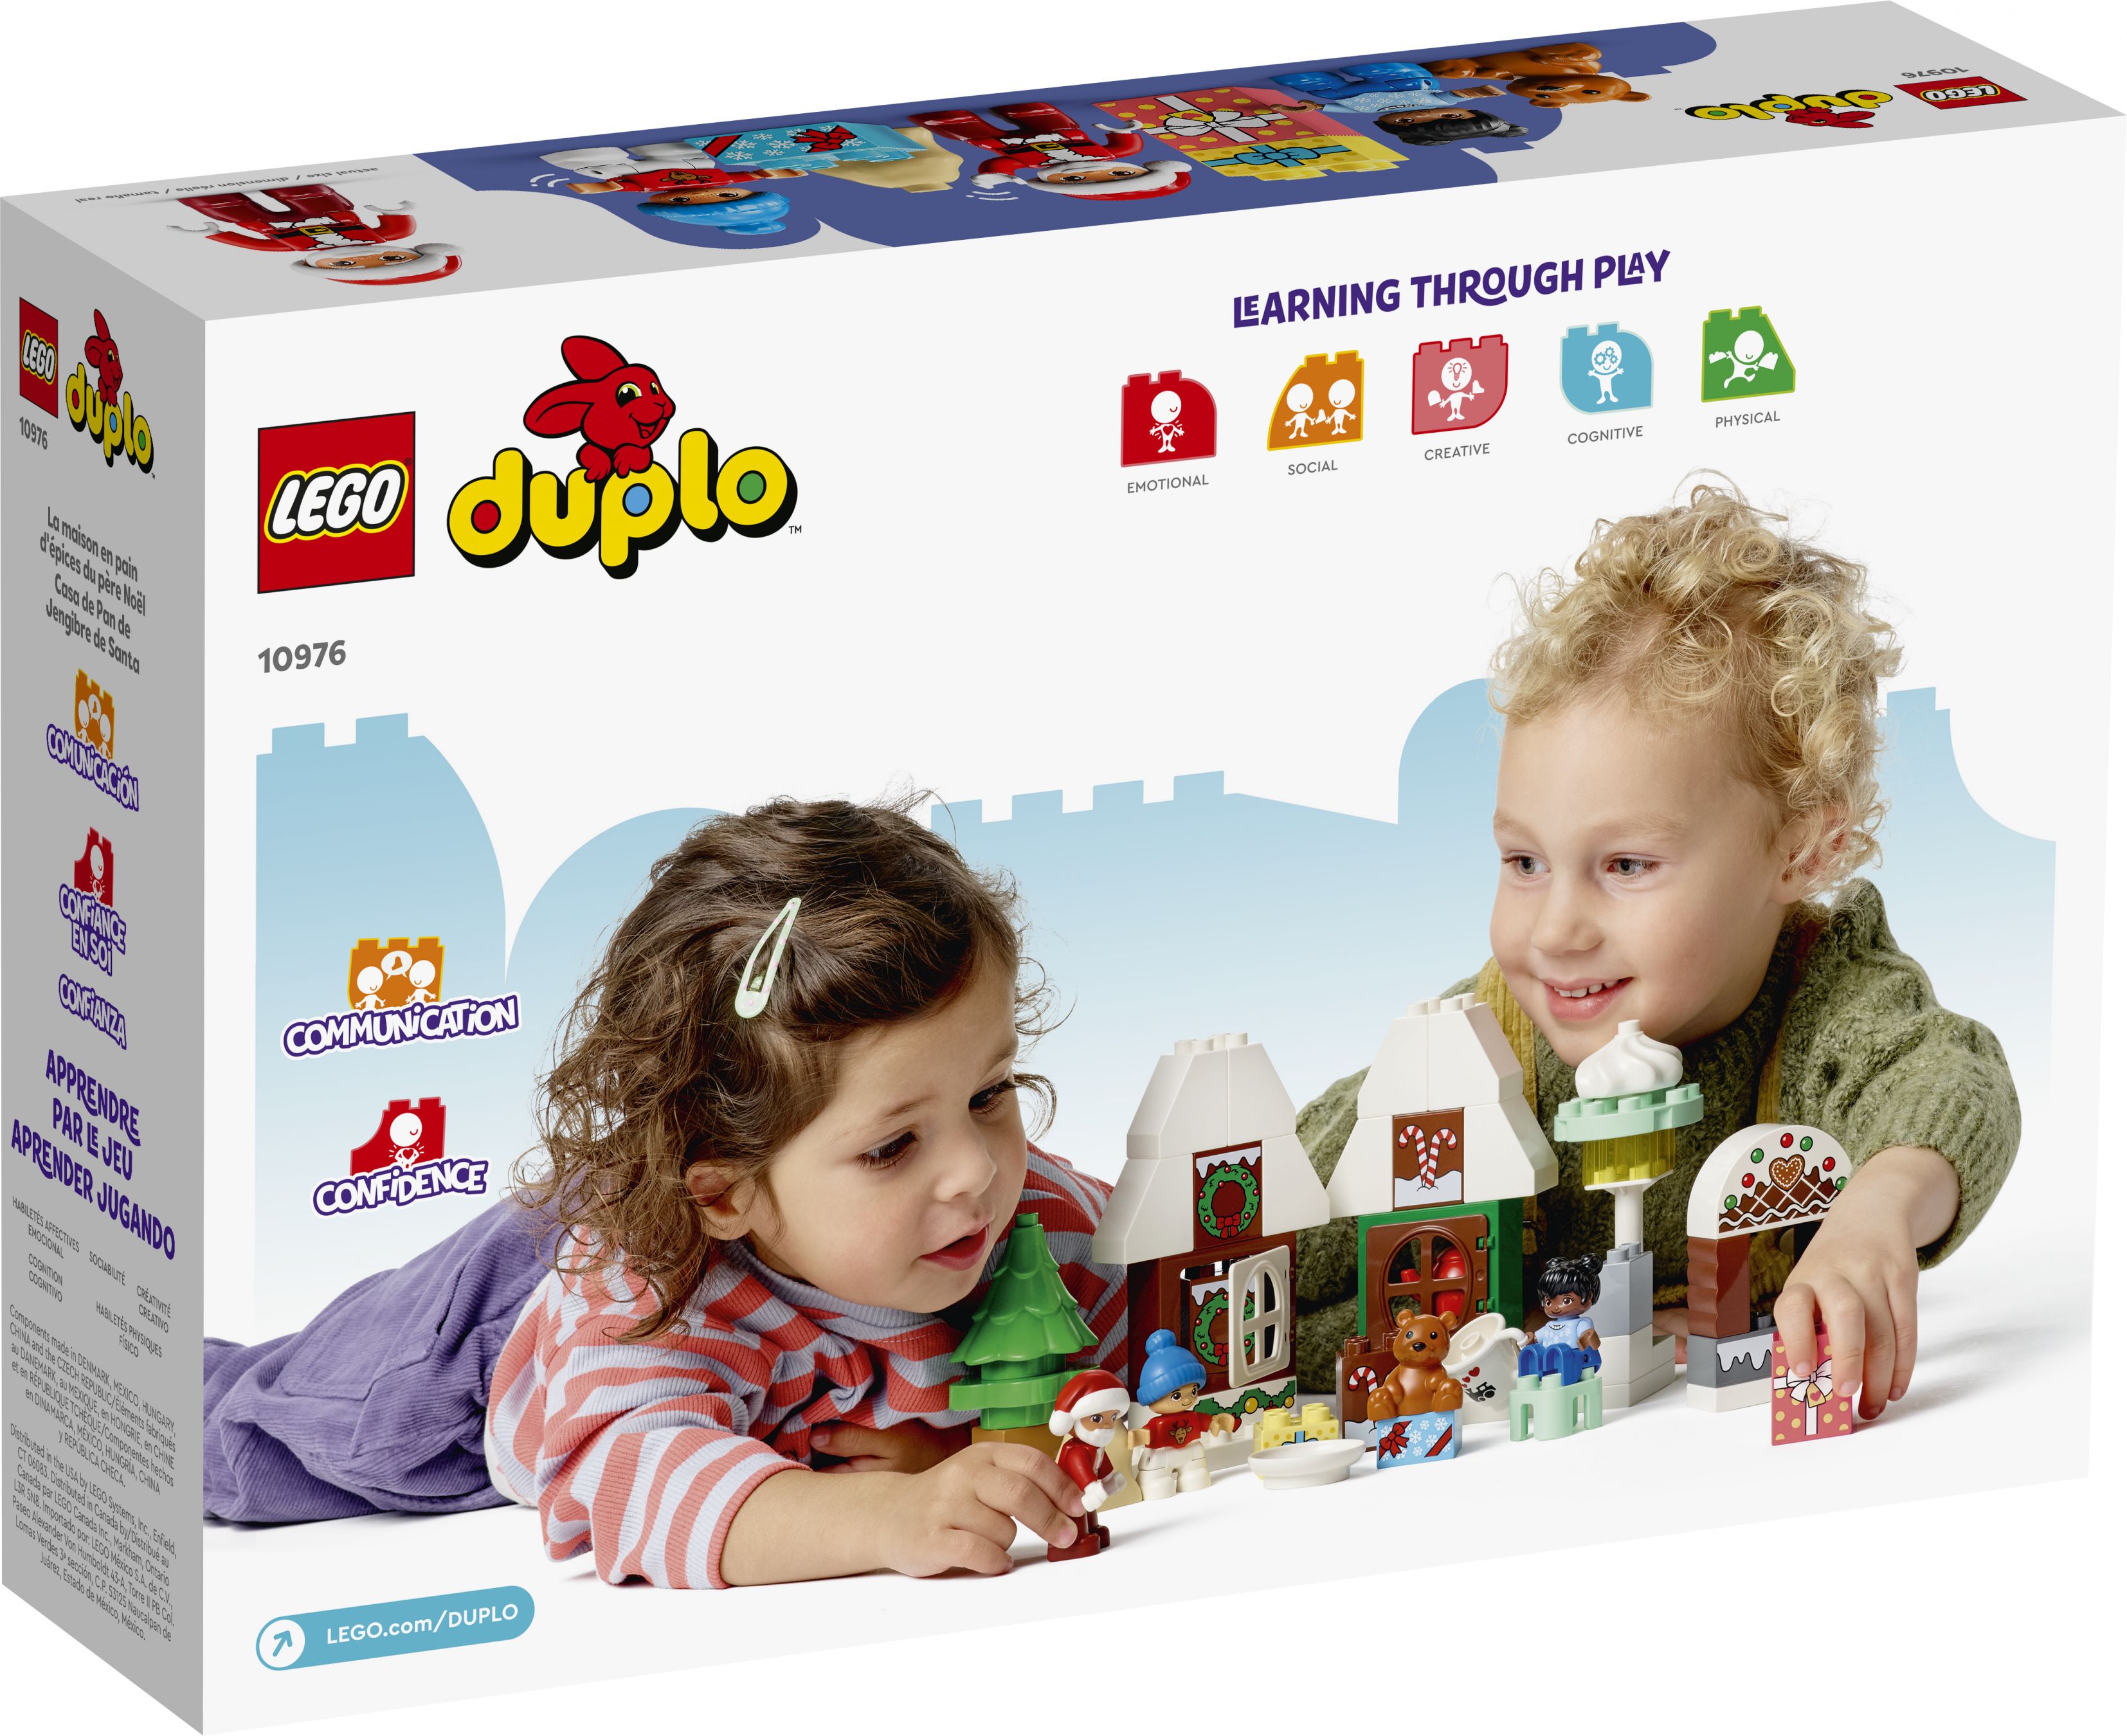 LEGO Duplo 10976 Lebkuchenhaus mit Weihnachtsmann LEGO_10976_Box5_v39.jpg